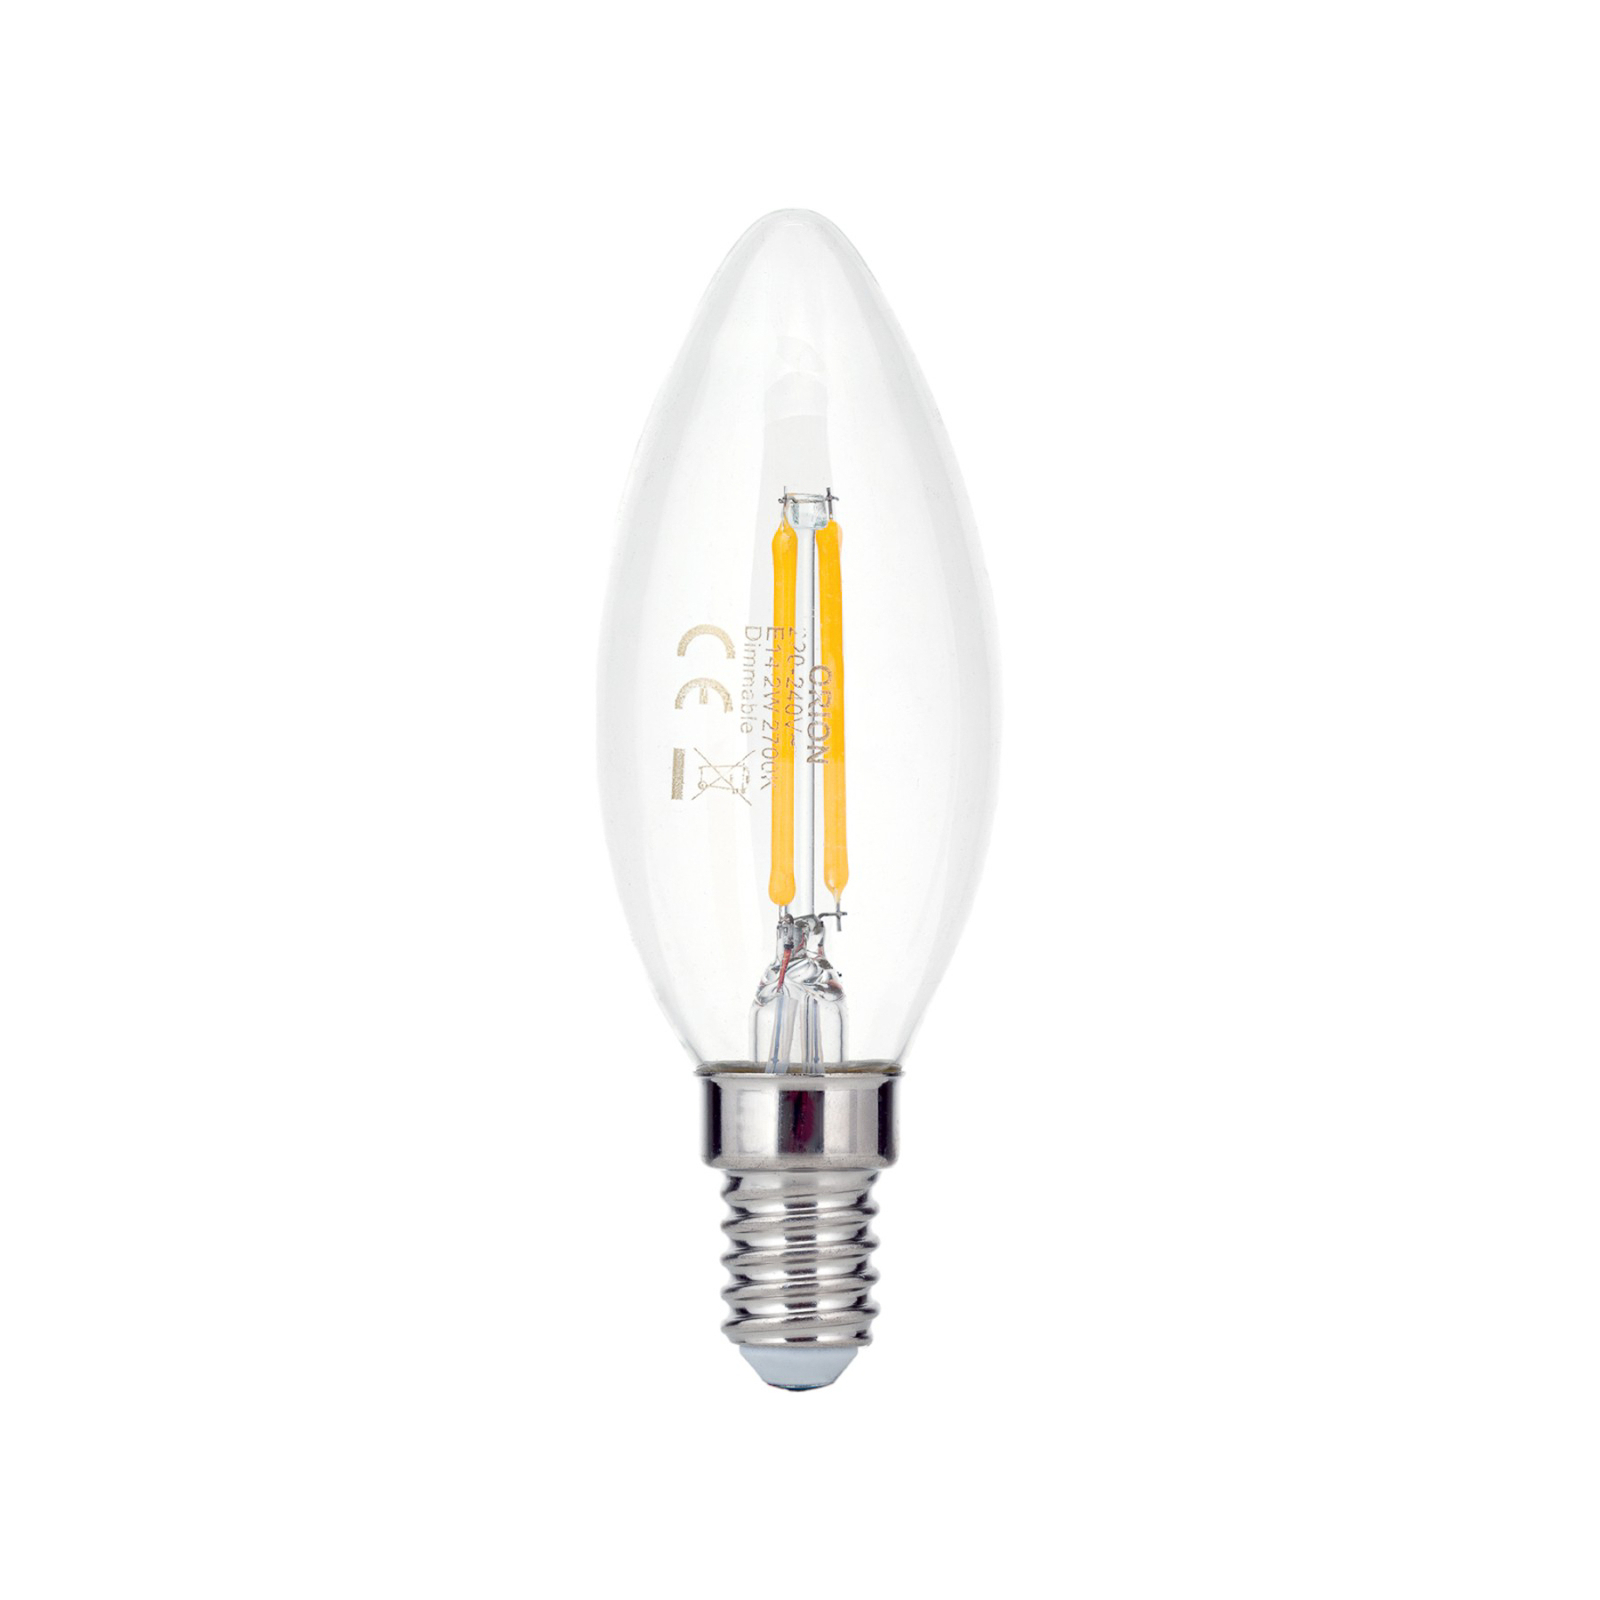 LED lamp E14 C35 helder 2W 827 180lm dimbaar